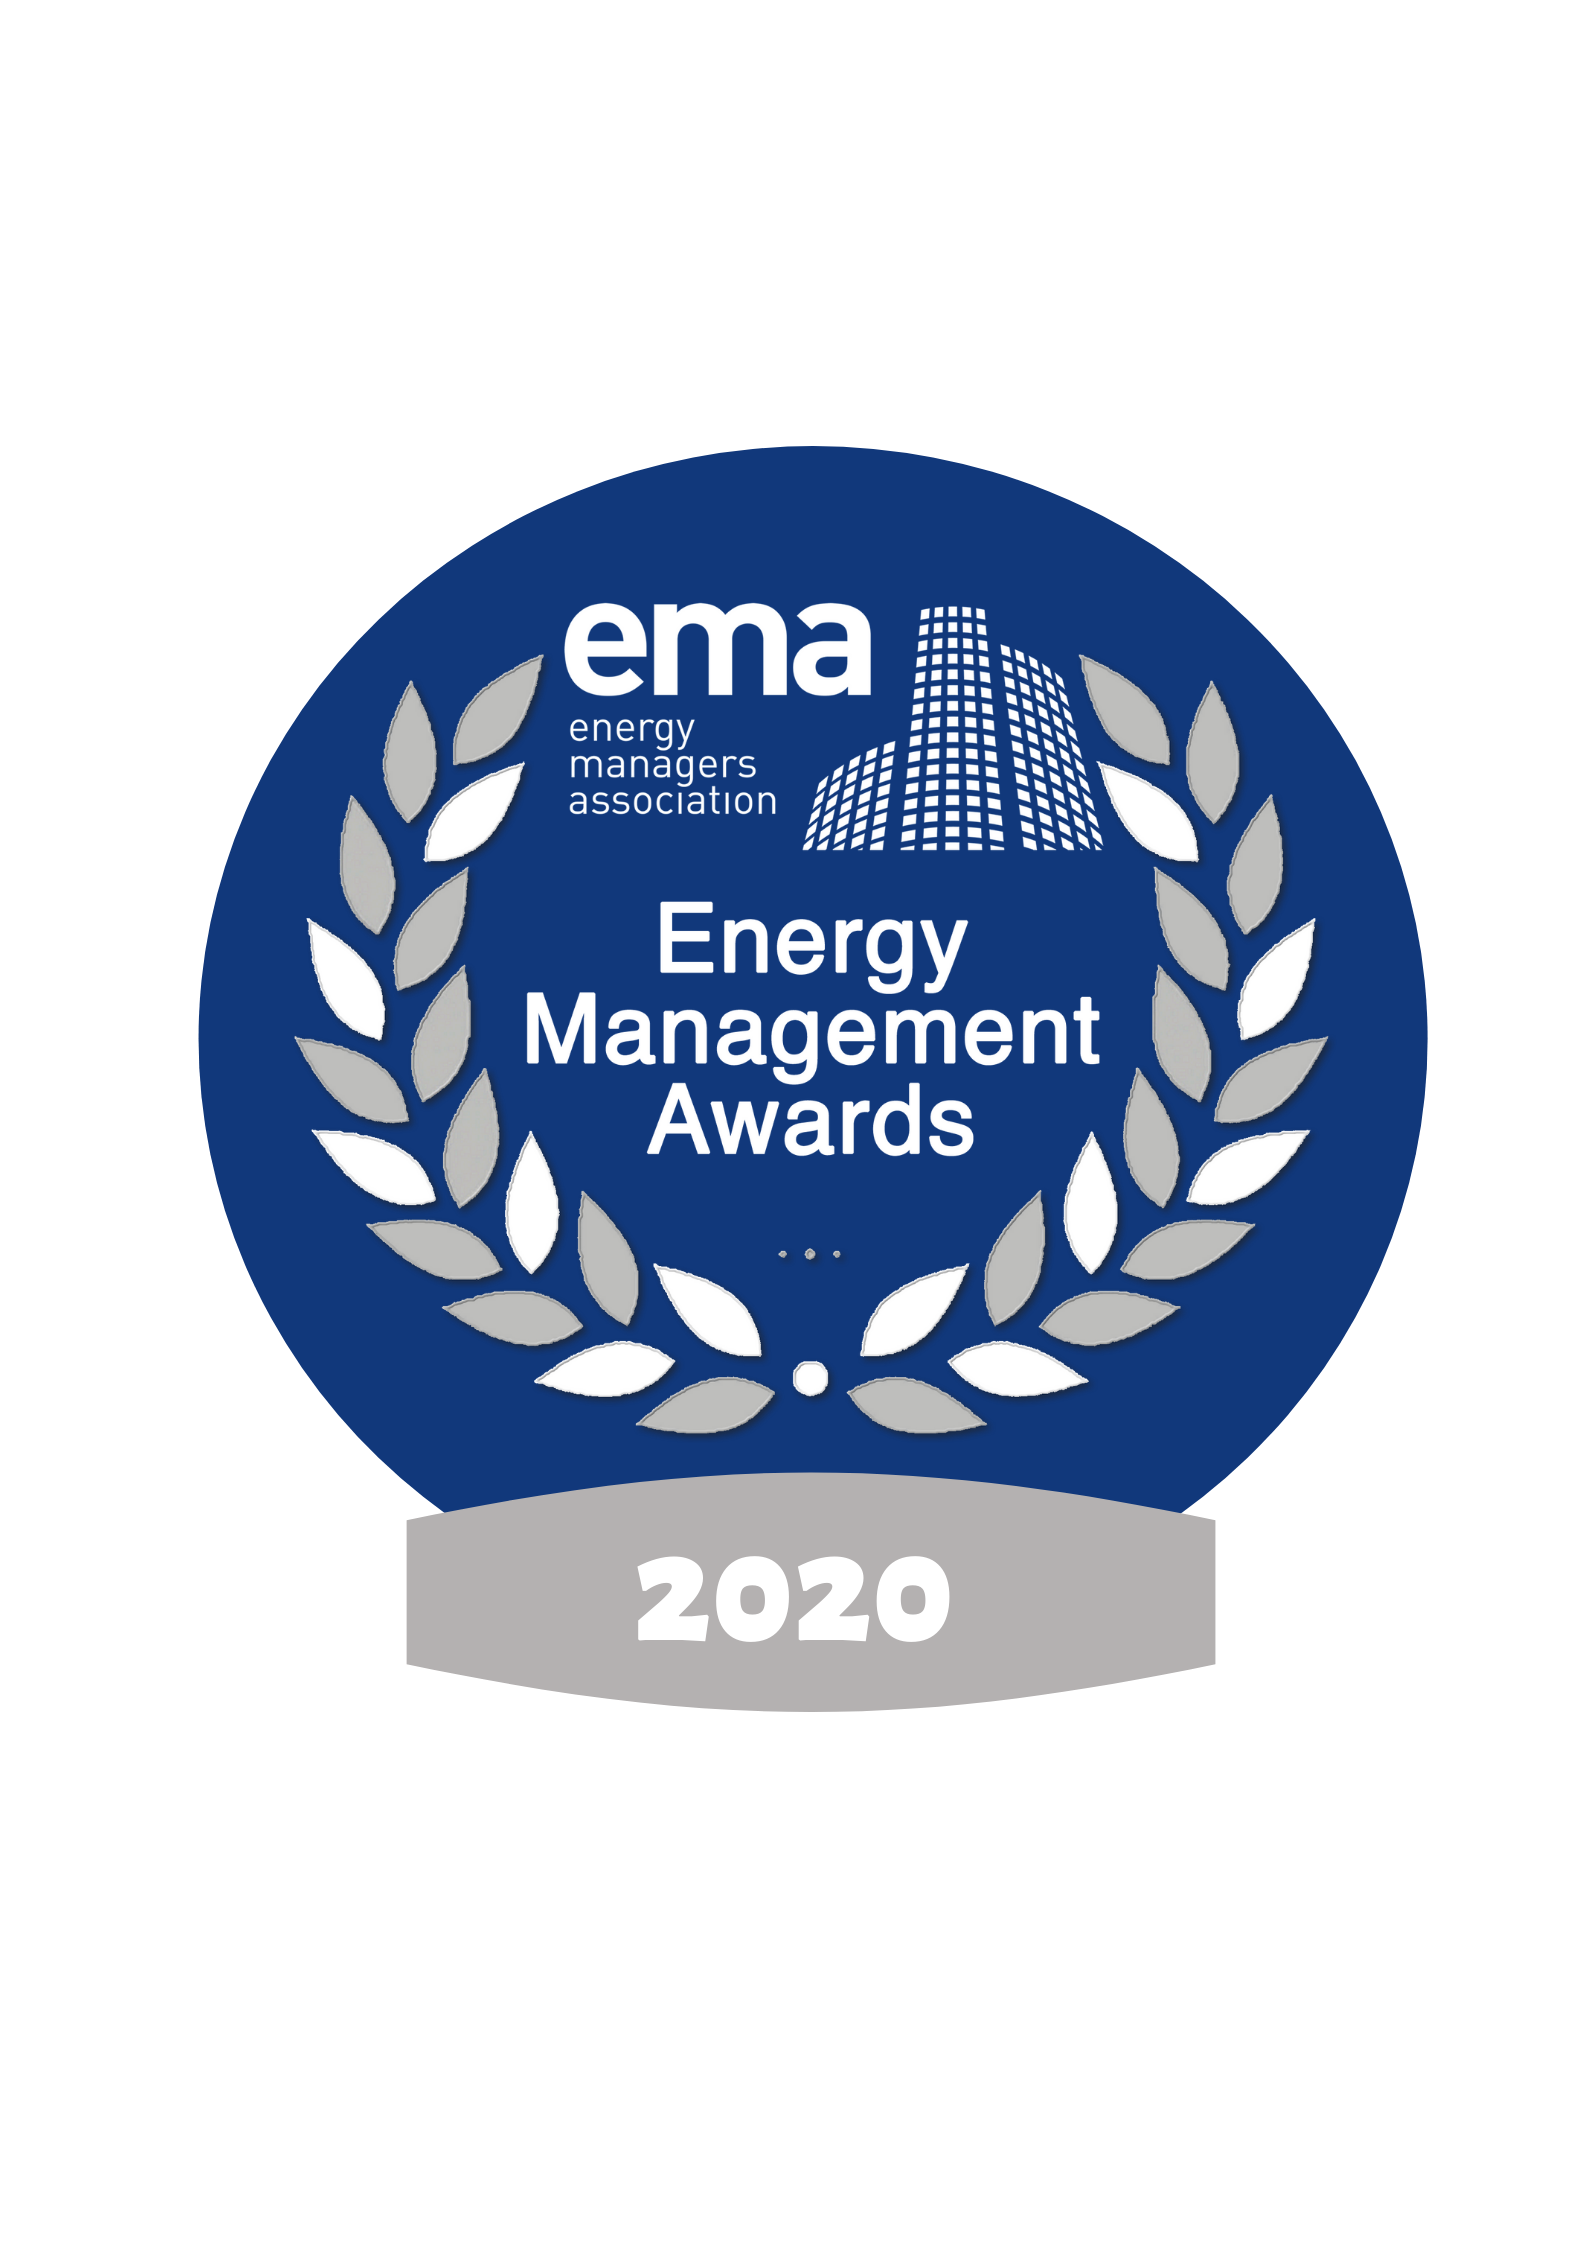 Energy Management Awards 2020